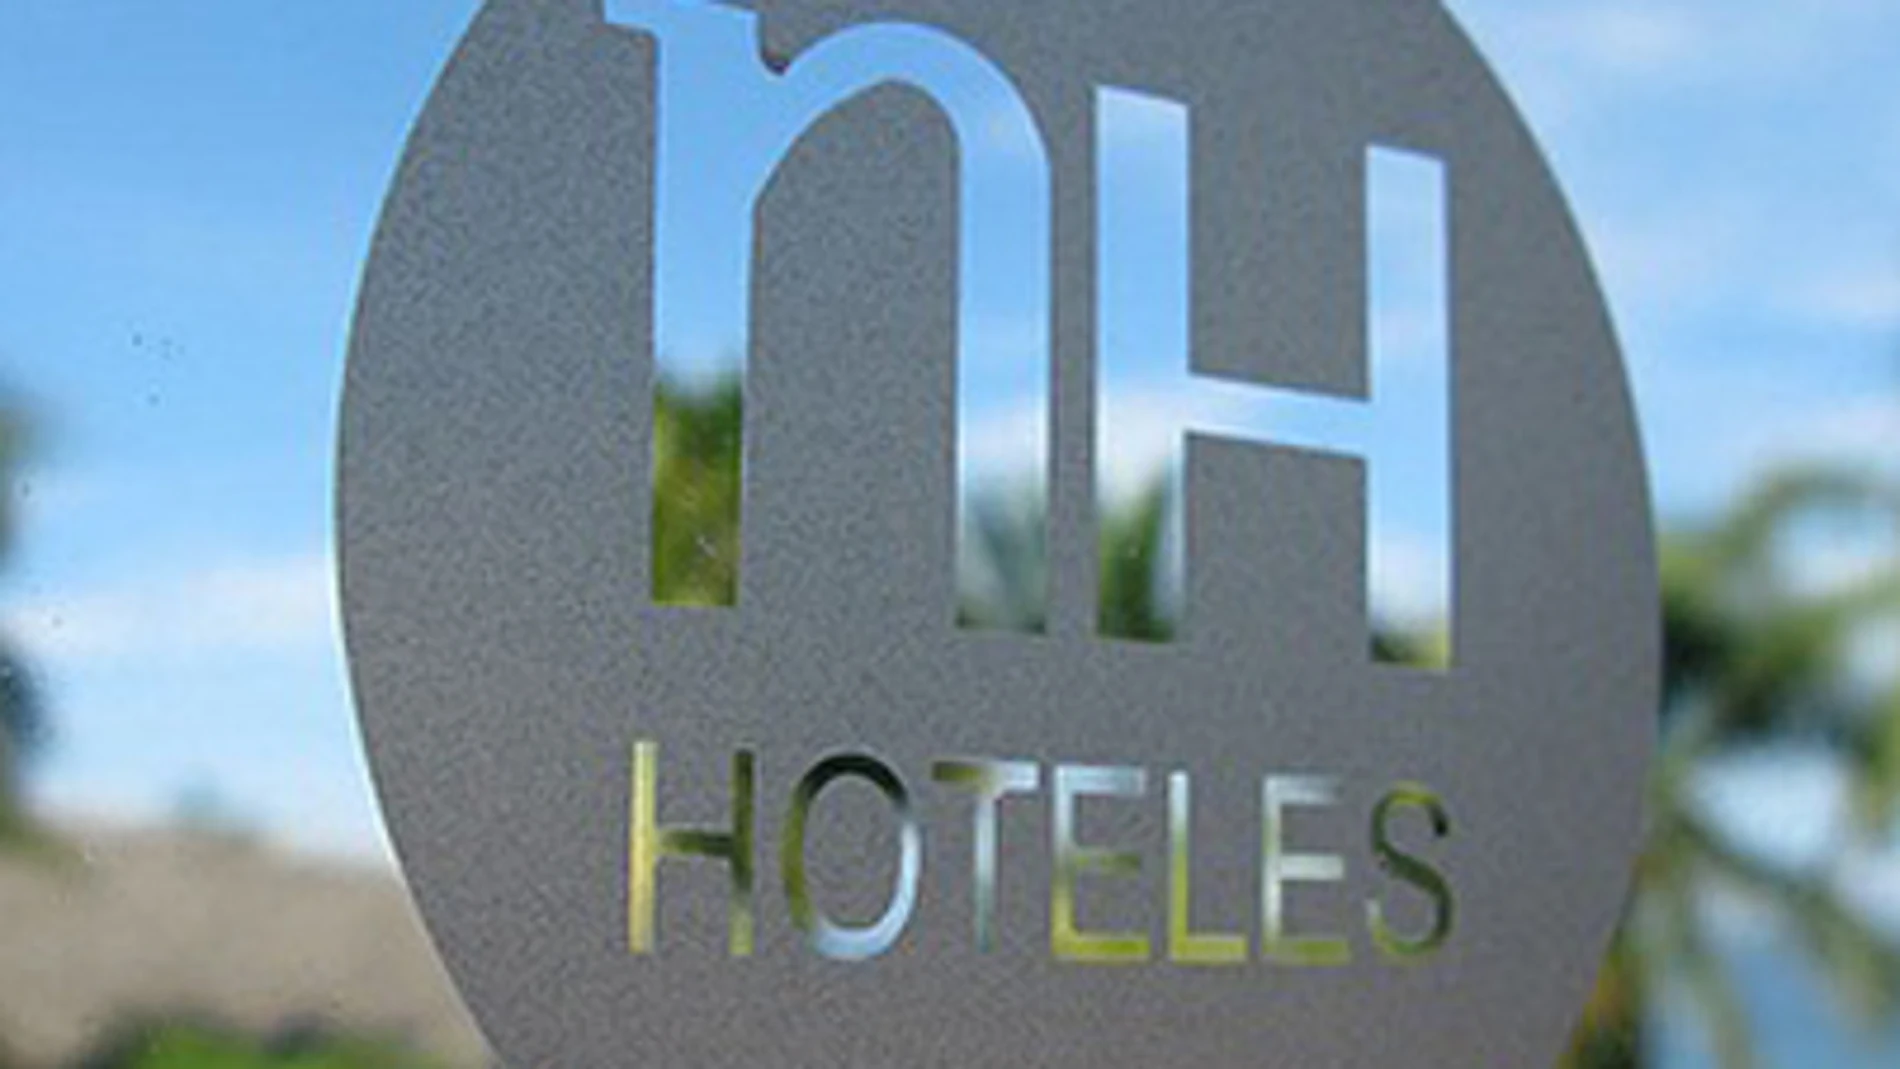 Bankia pone a la venta su participación del 12,6 % en NH Hoteles